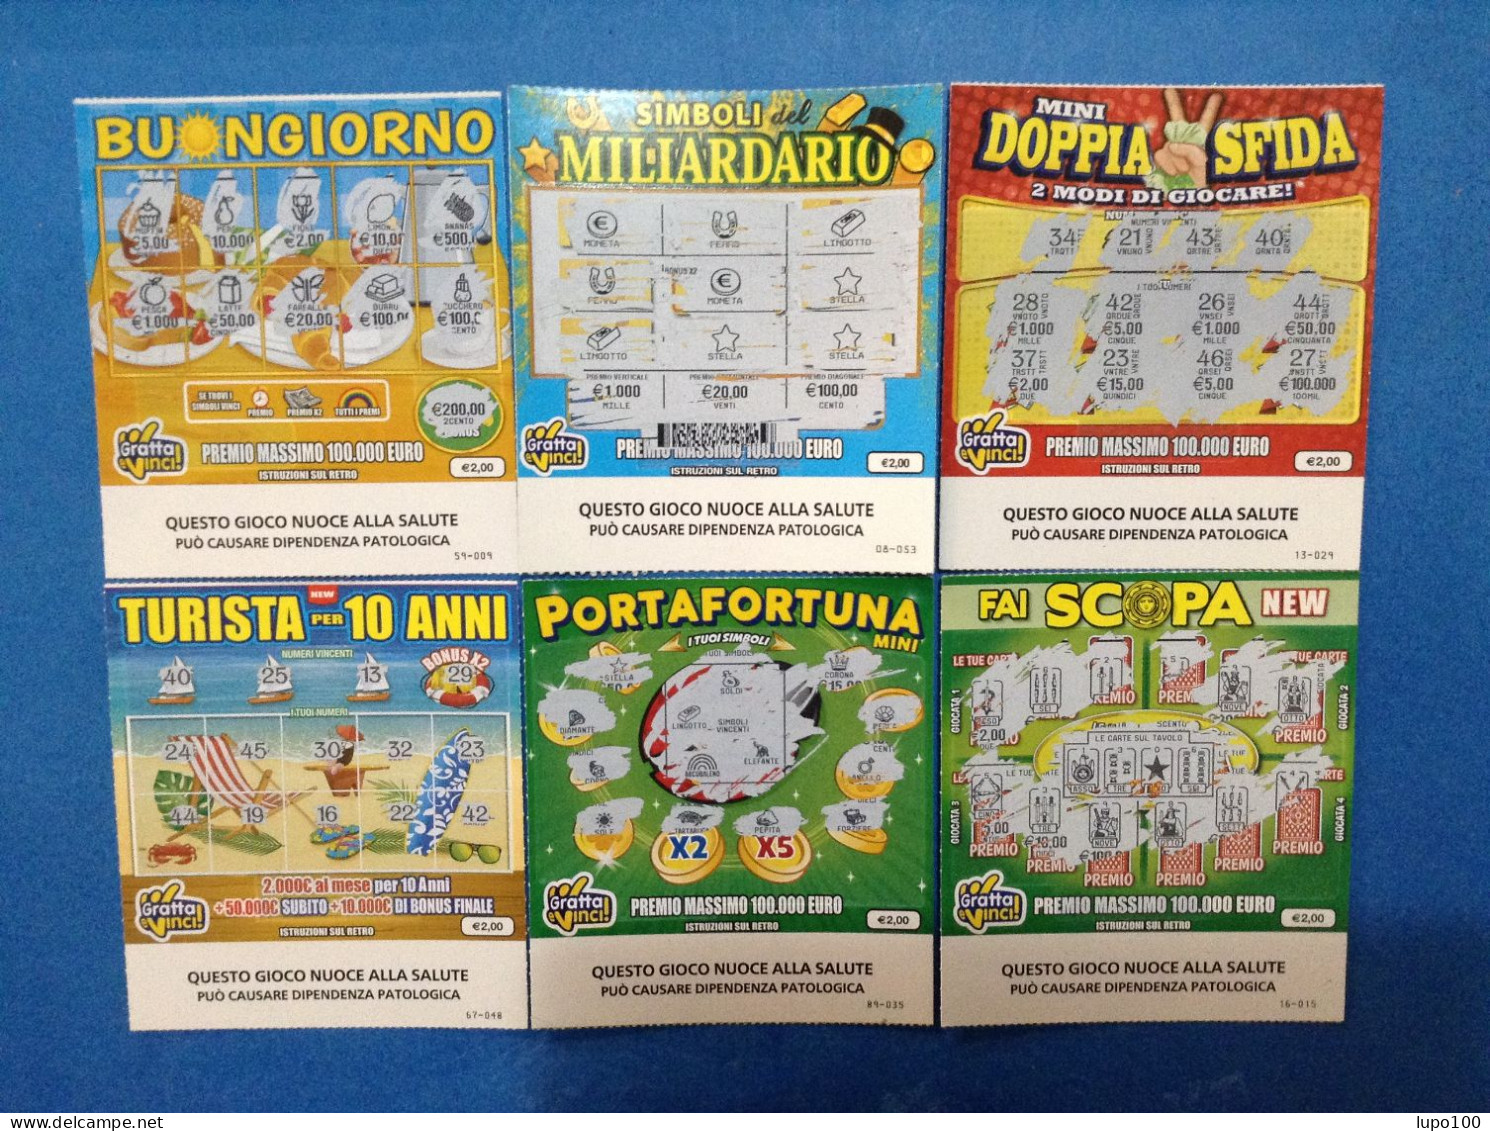 6 Biglietti Lotteria Gratta E Vinci Fai Scopa Portafortuna New Turista Per 10 Anni Mini Doppia Sfida Simboli Buongiorno - Lottery Tickets